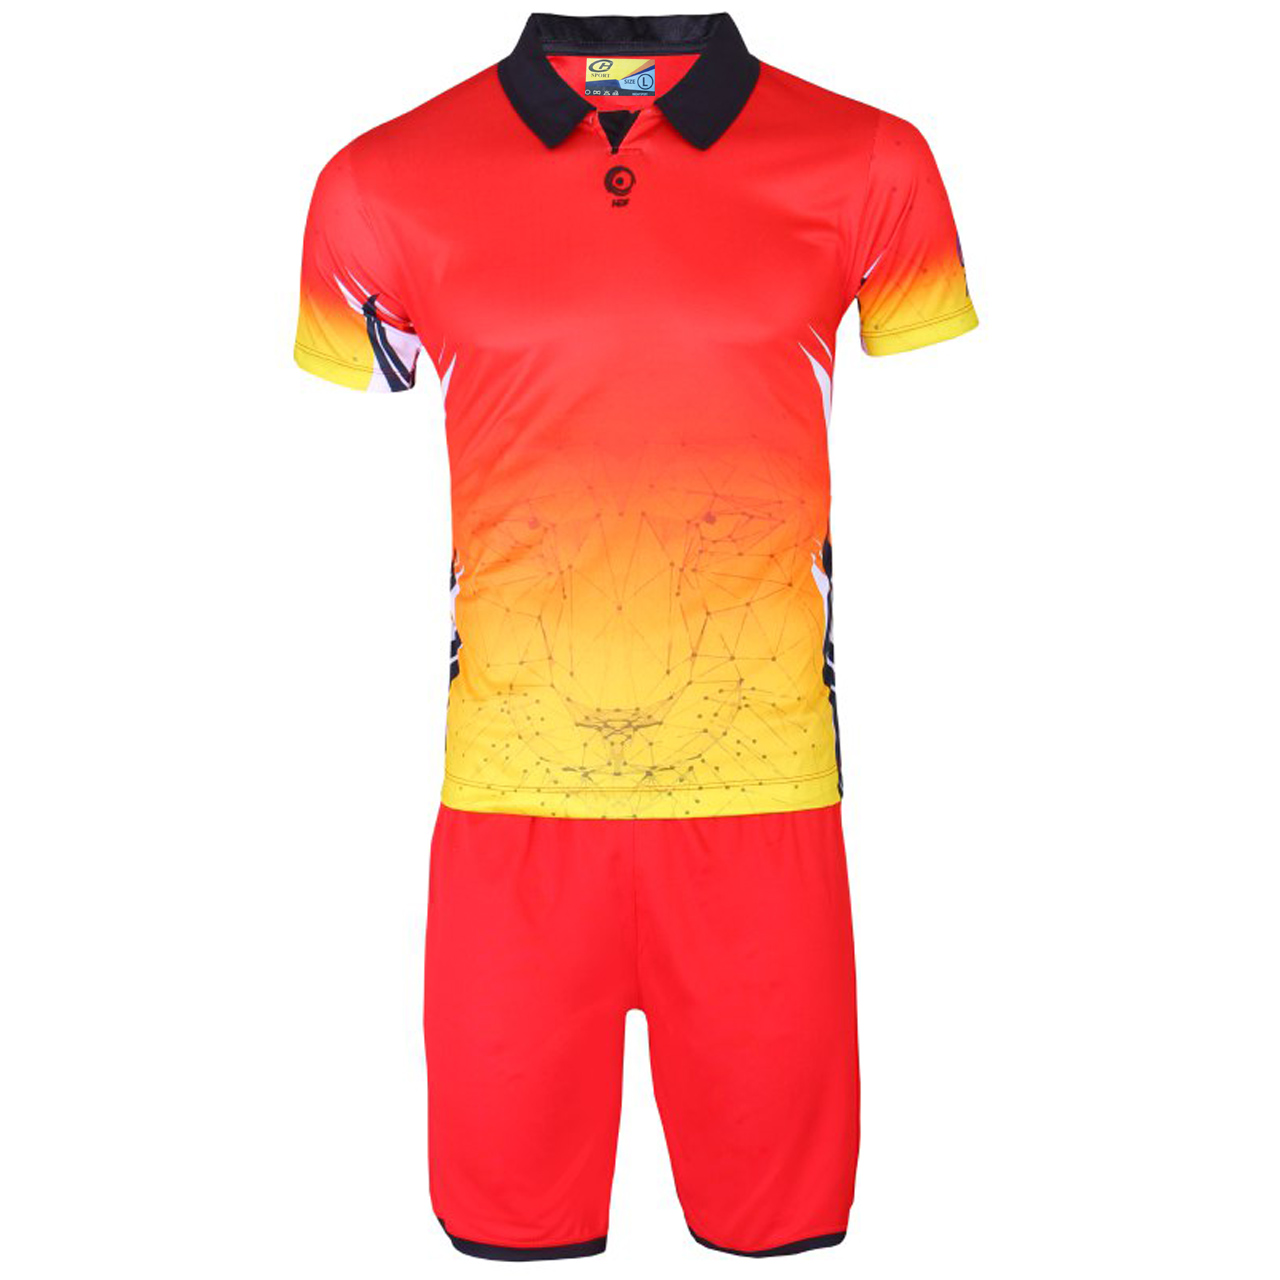 پیراهن و شورت ورزشی مردانه هدف اسپرت مدل لیون HDF01 رنگ قرمز